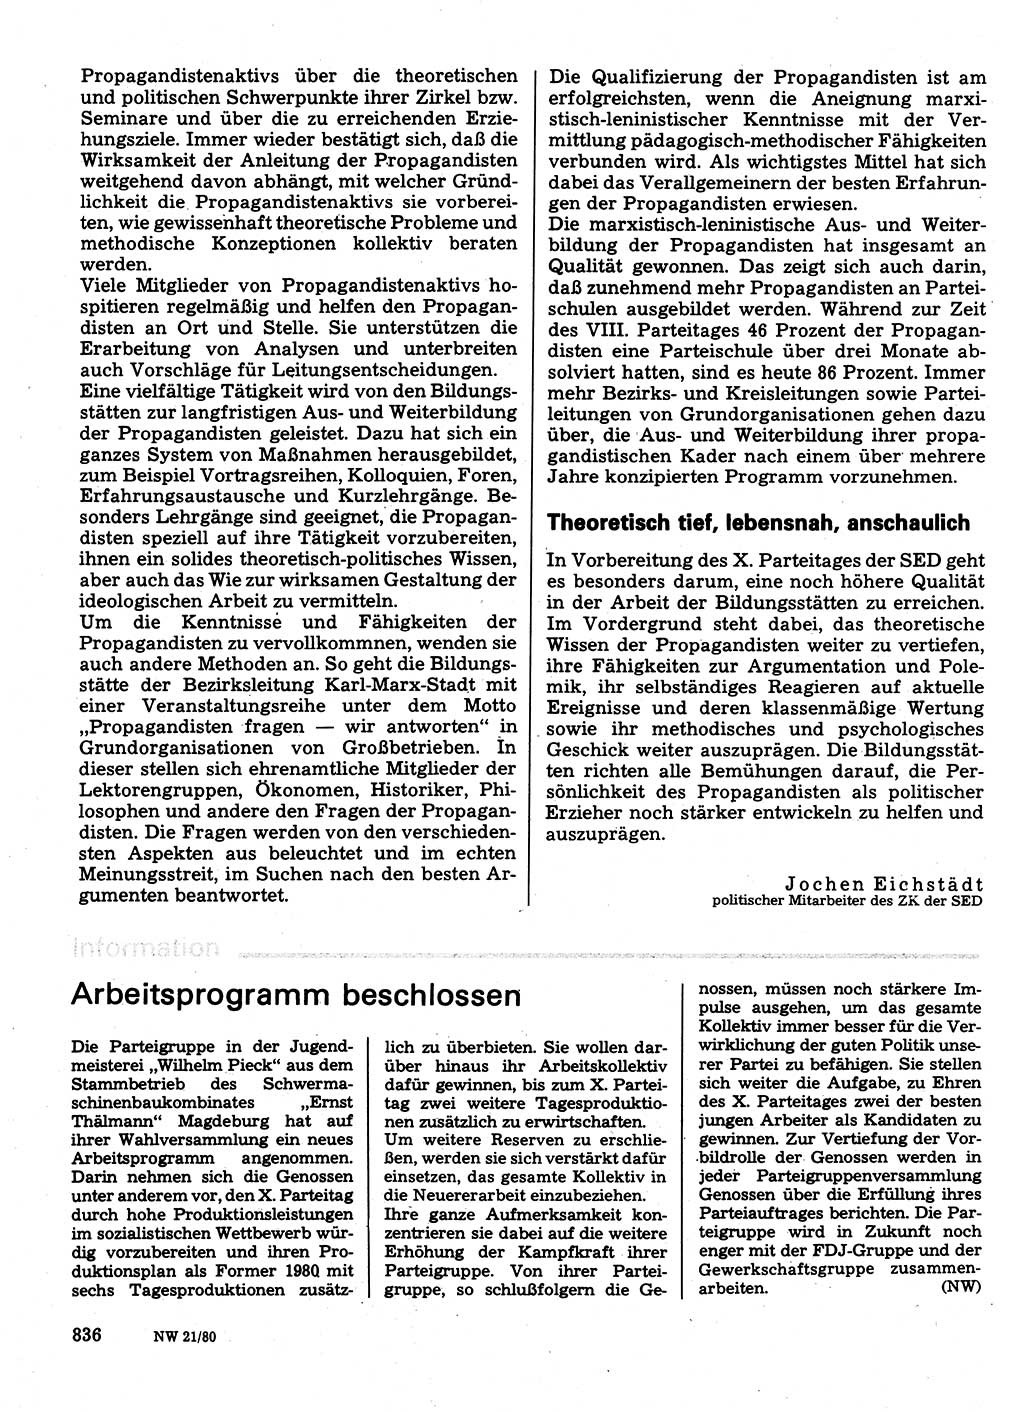 Neuer Weg (NW), Organ des Zentralkomitees (ZK) der SED (Sozialistische Einheitspartei Deutschlands) für Fragen des Parteilebens, 35. Jahrgang [Deutsche Demokratische Republik (DDR)] 1980, Seite 836 (NW ZK SED DDR 1980, S. 836)